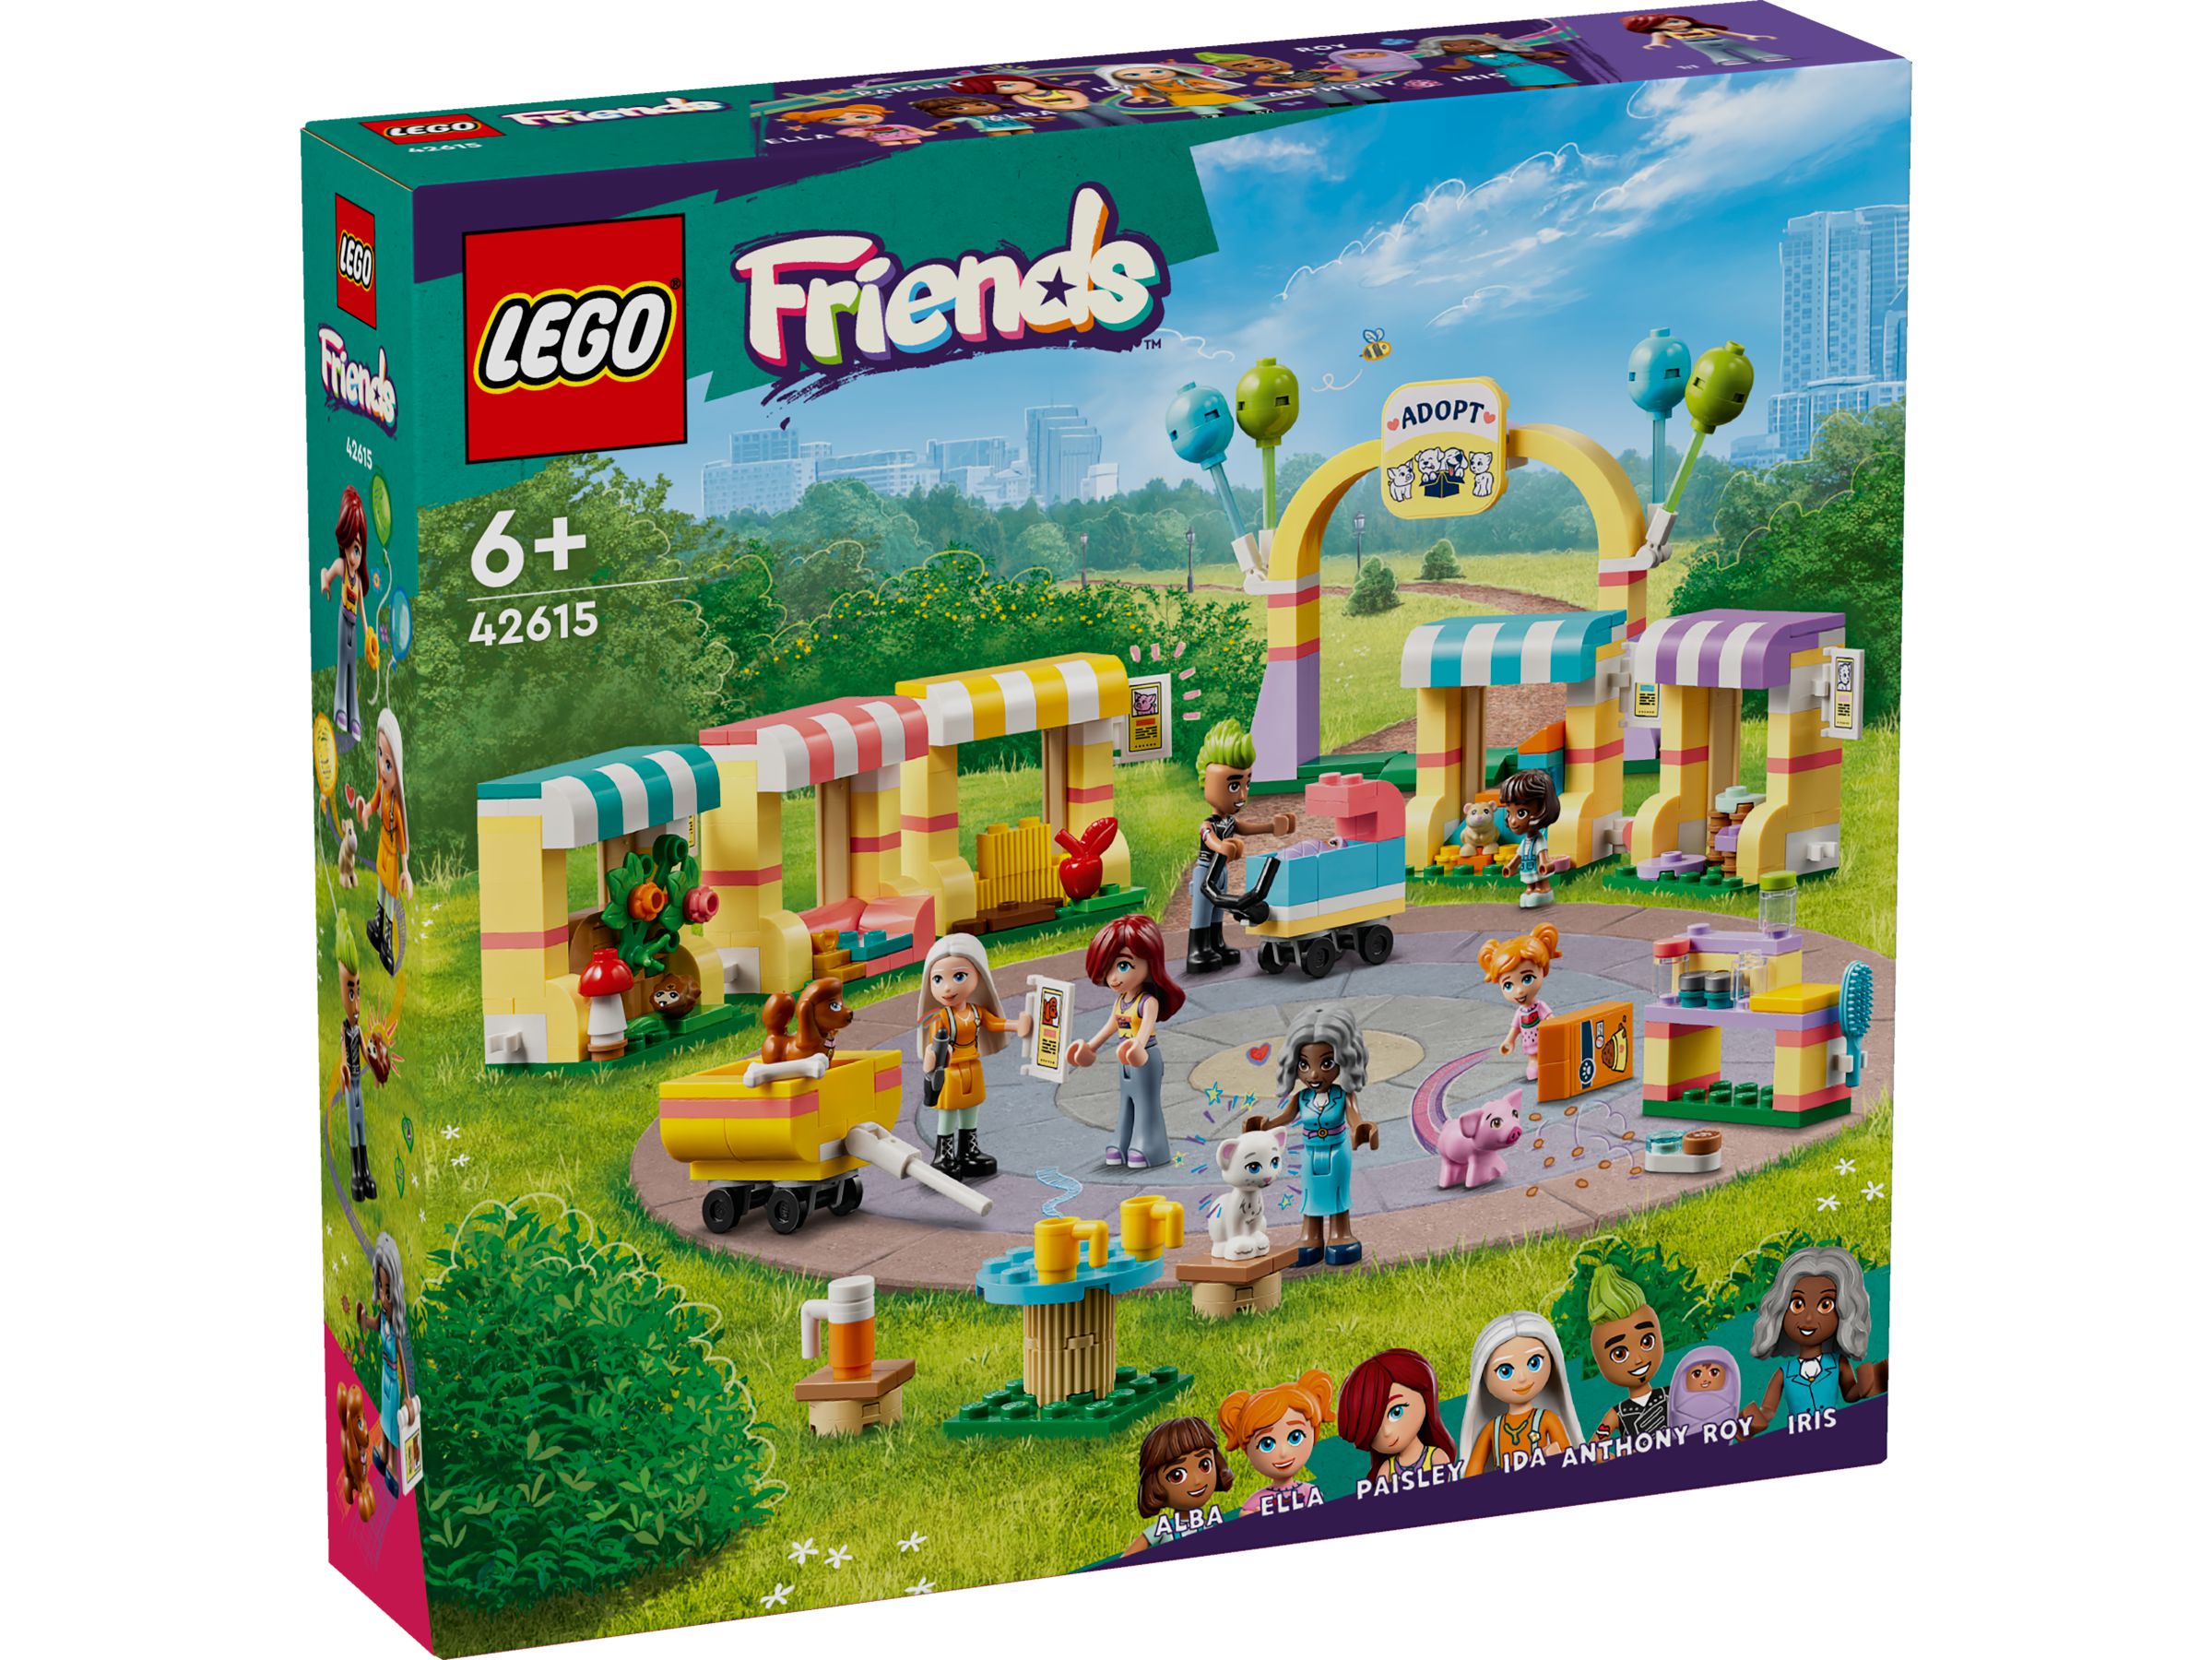 LEGO Friends 42615 Tieradoptionstag LEGO_42615_Box1_v29.jpg